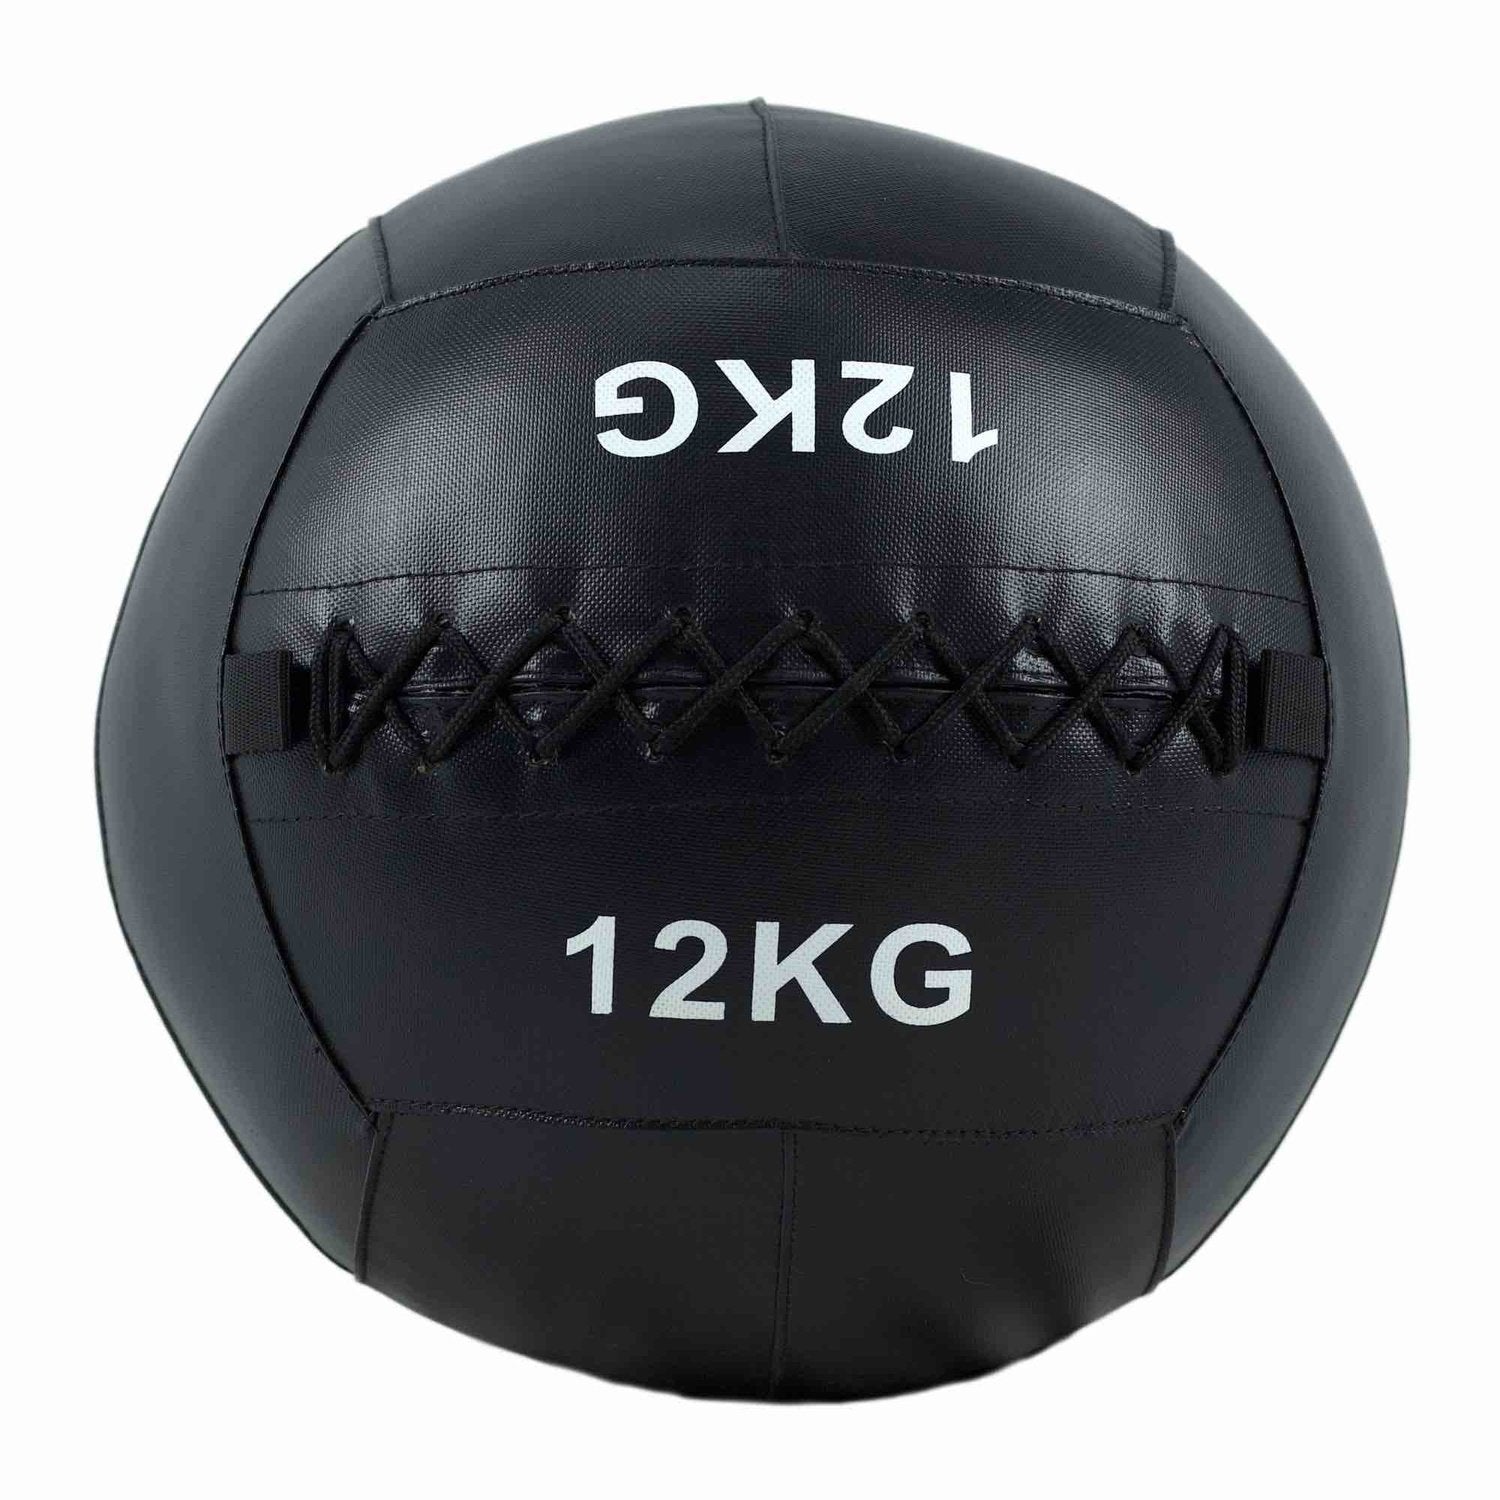 HighPowered Wallball (Medizinball) 12 kg kaufen bei HighPowered.ch